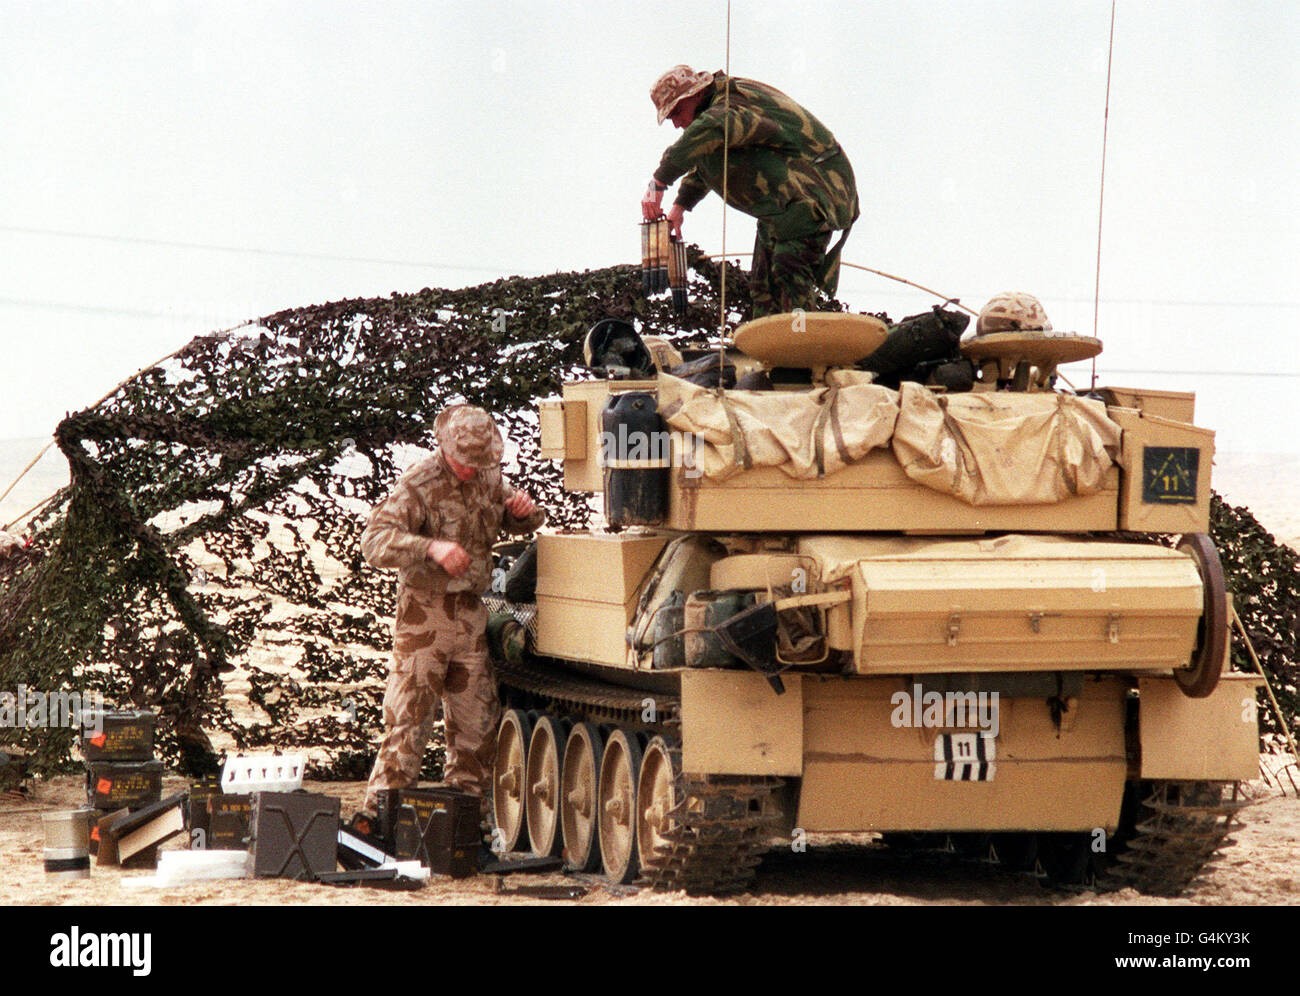 Soldados británicos durante la Guerra del Golfo: Un vehículo blindado de los Lancers reales de la Reina 16/5 (parte de la 7ª Brigada blindada) está cargado con tiendas frescas y armas en el desierto de Arabia Saudita durante la Guerra del Golfo. Foto de stock